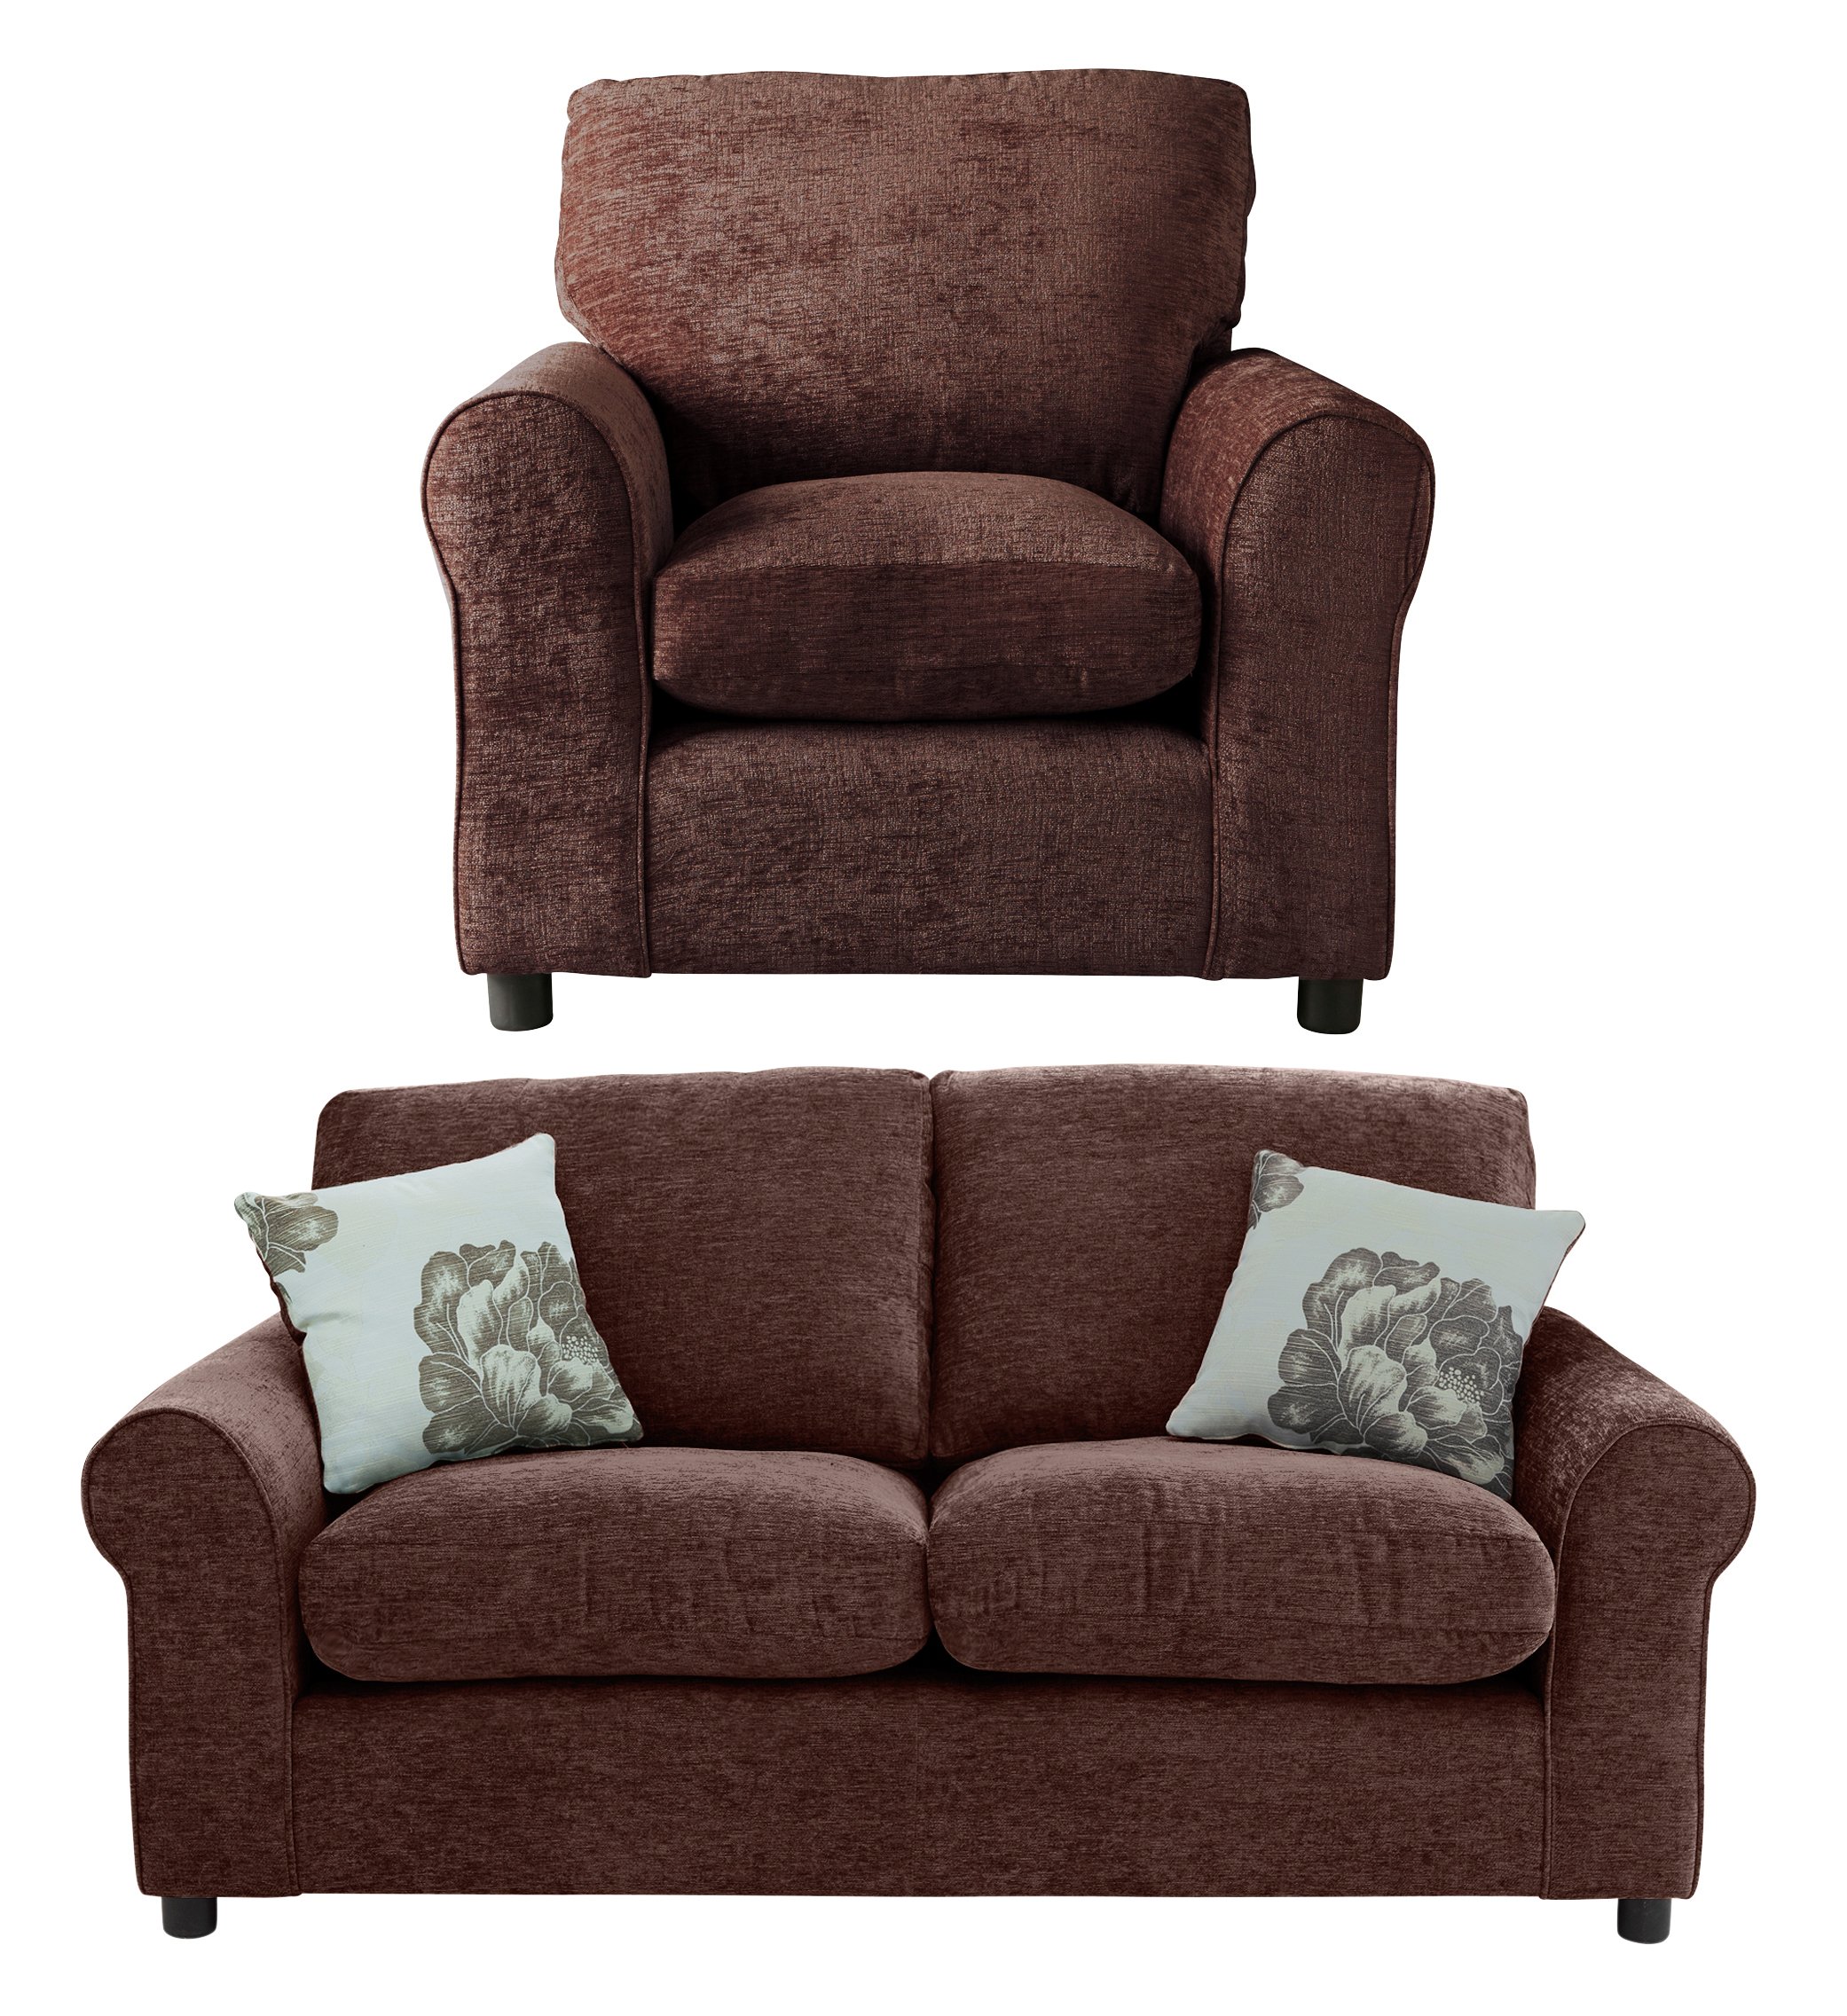 Argos Home Tessa Fabric Compact 3 Seater Sofa & Chair - Choc